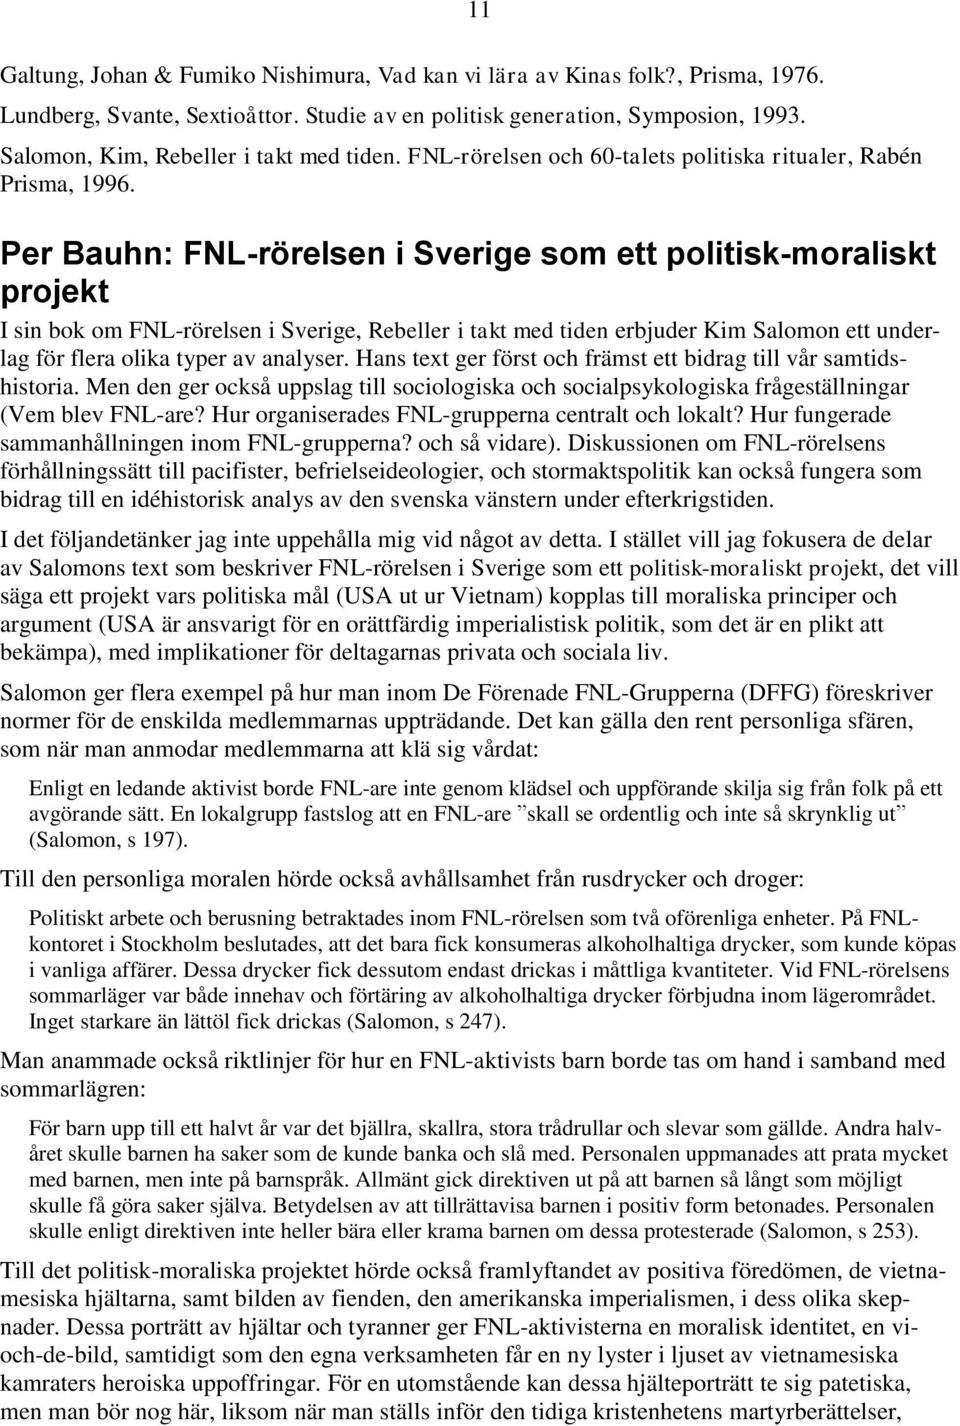 11 Per Bauhn: FNL-rörelsen i Sverige som ett politisk-moraliskt projekt I sin bok om FNL-rörelsen i Sverige, Rebeller i takt med tiden erbjuder Kim Salomon ett underlag för flera olika typer av